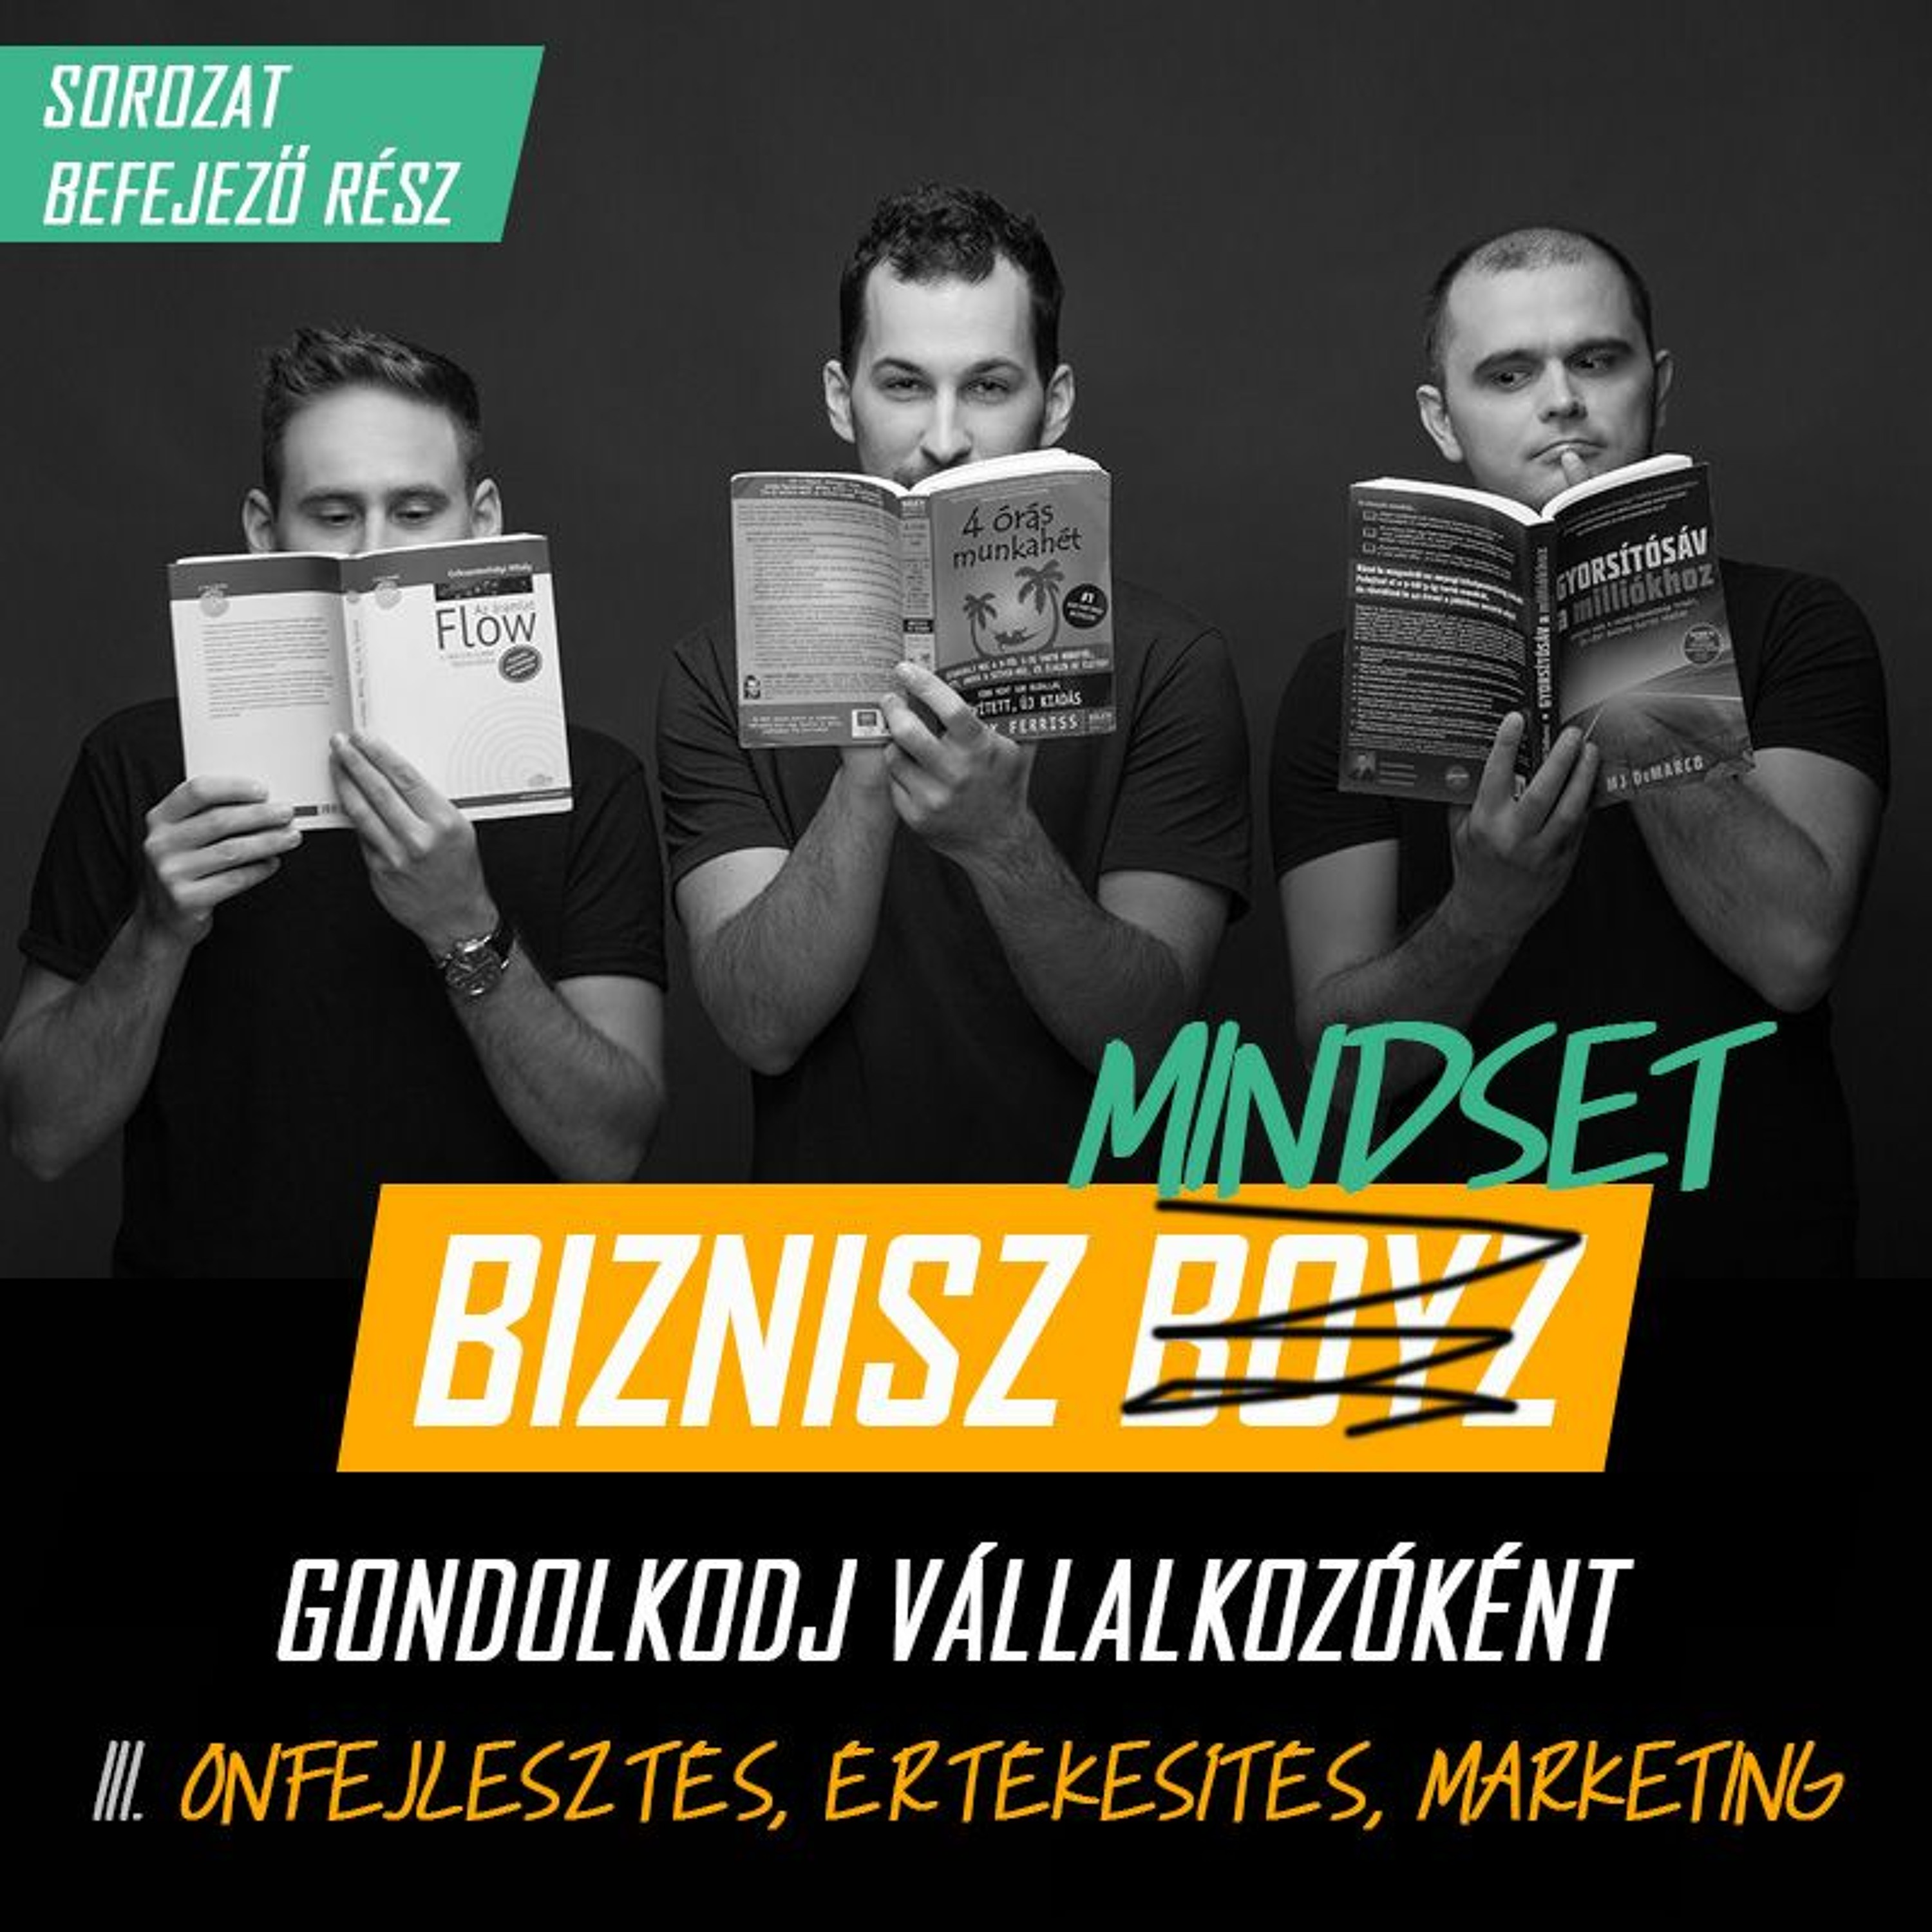 Biznisz Mindset III. - Értékesítés, marketing és önfejlesztés vállalkozóként | Biznisz Boyz Podcast